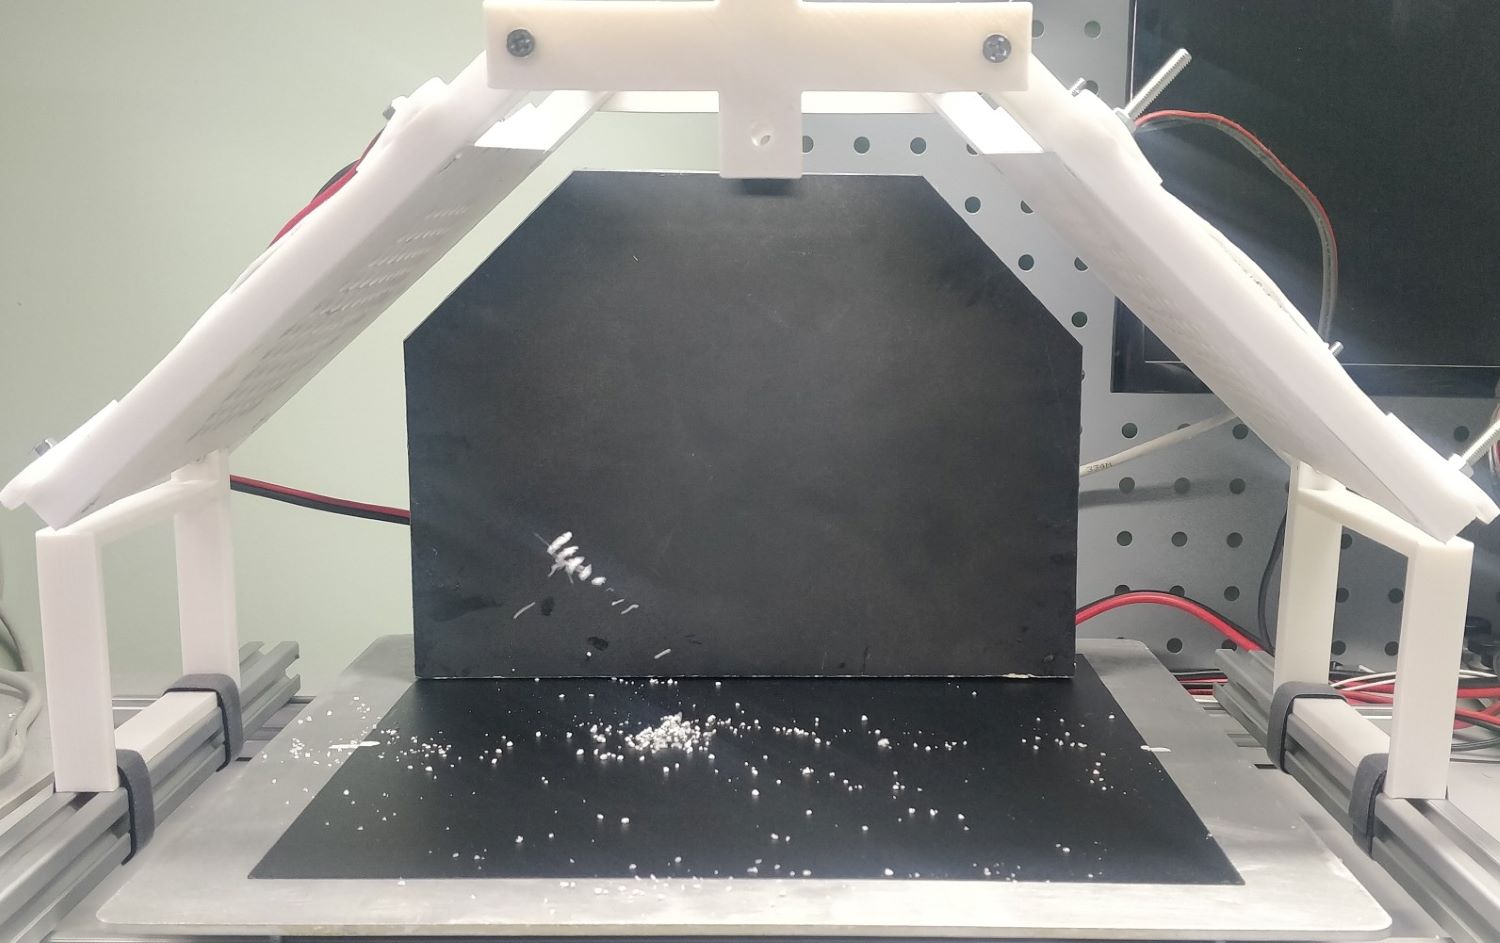 超声波的热声效应将在新的3D打印方法中得到应用